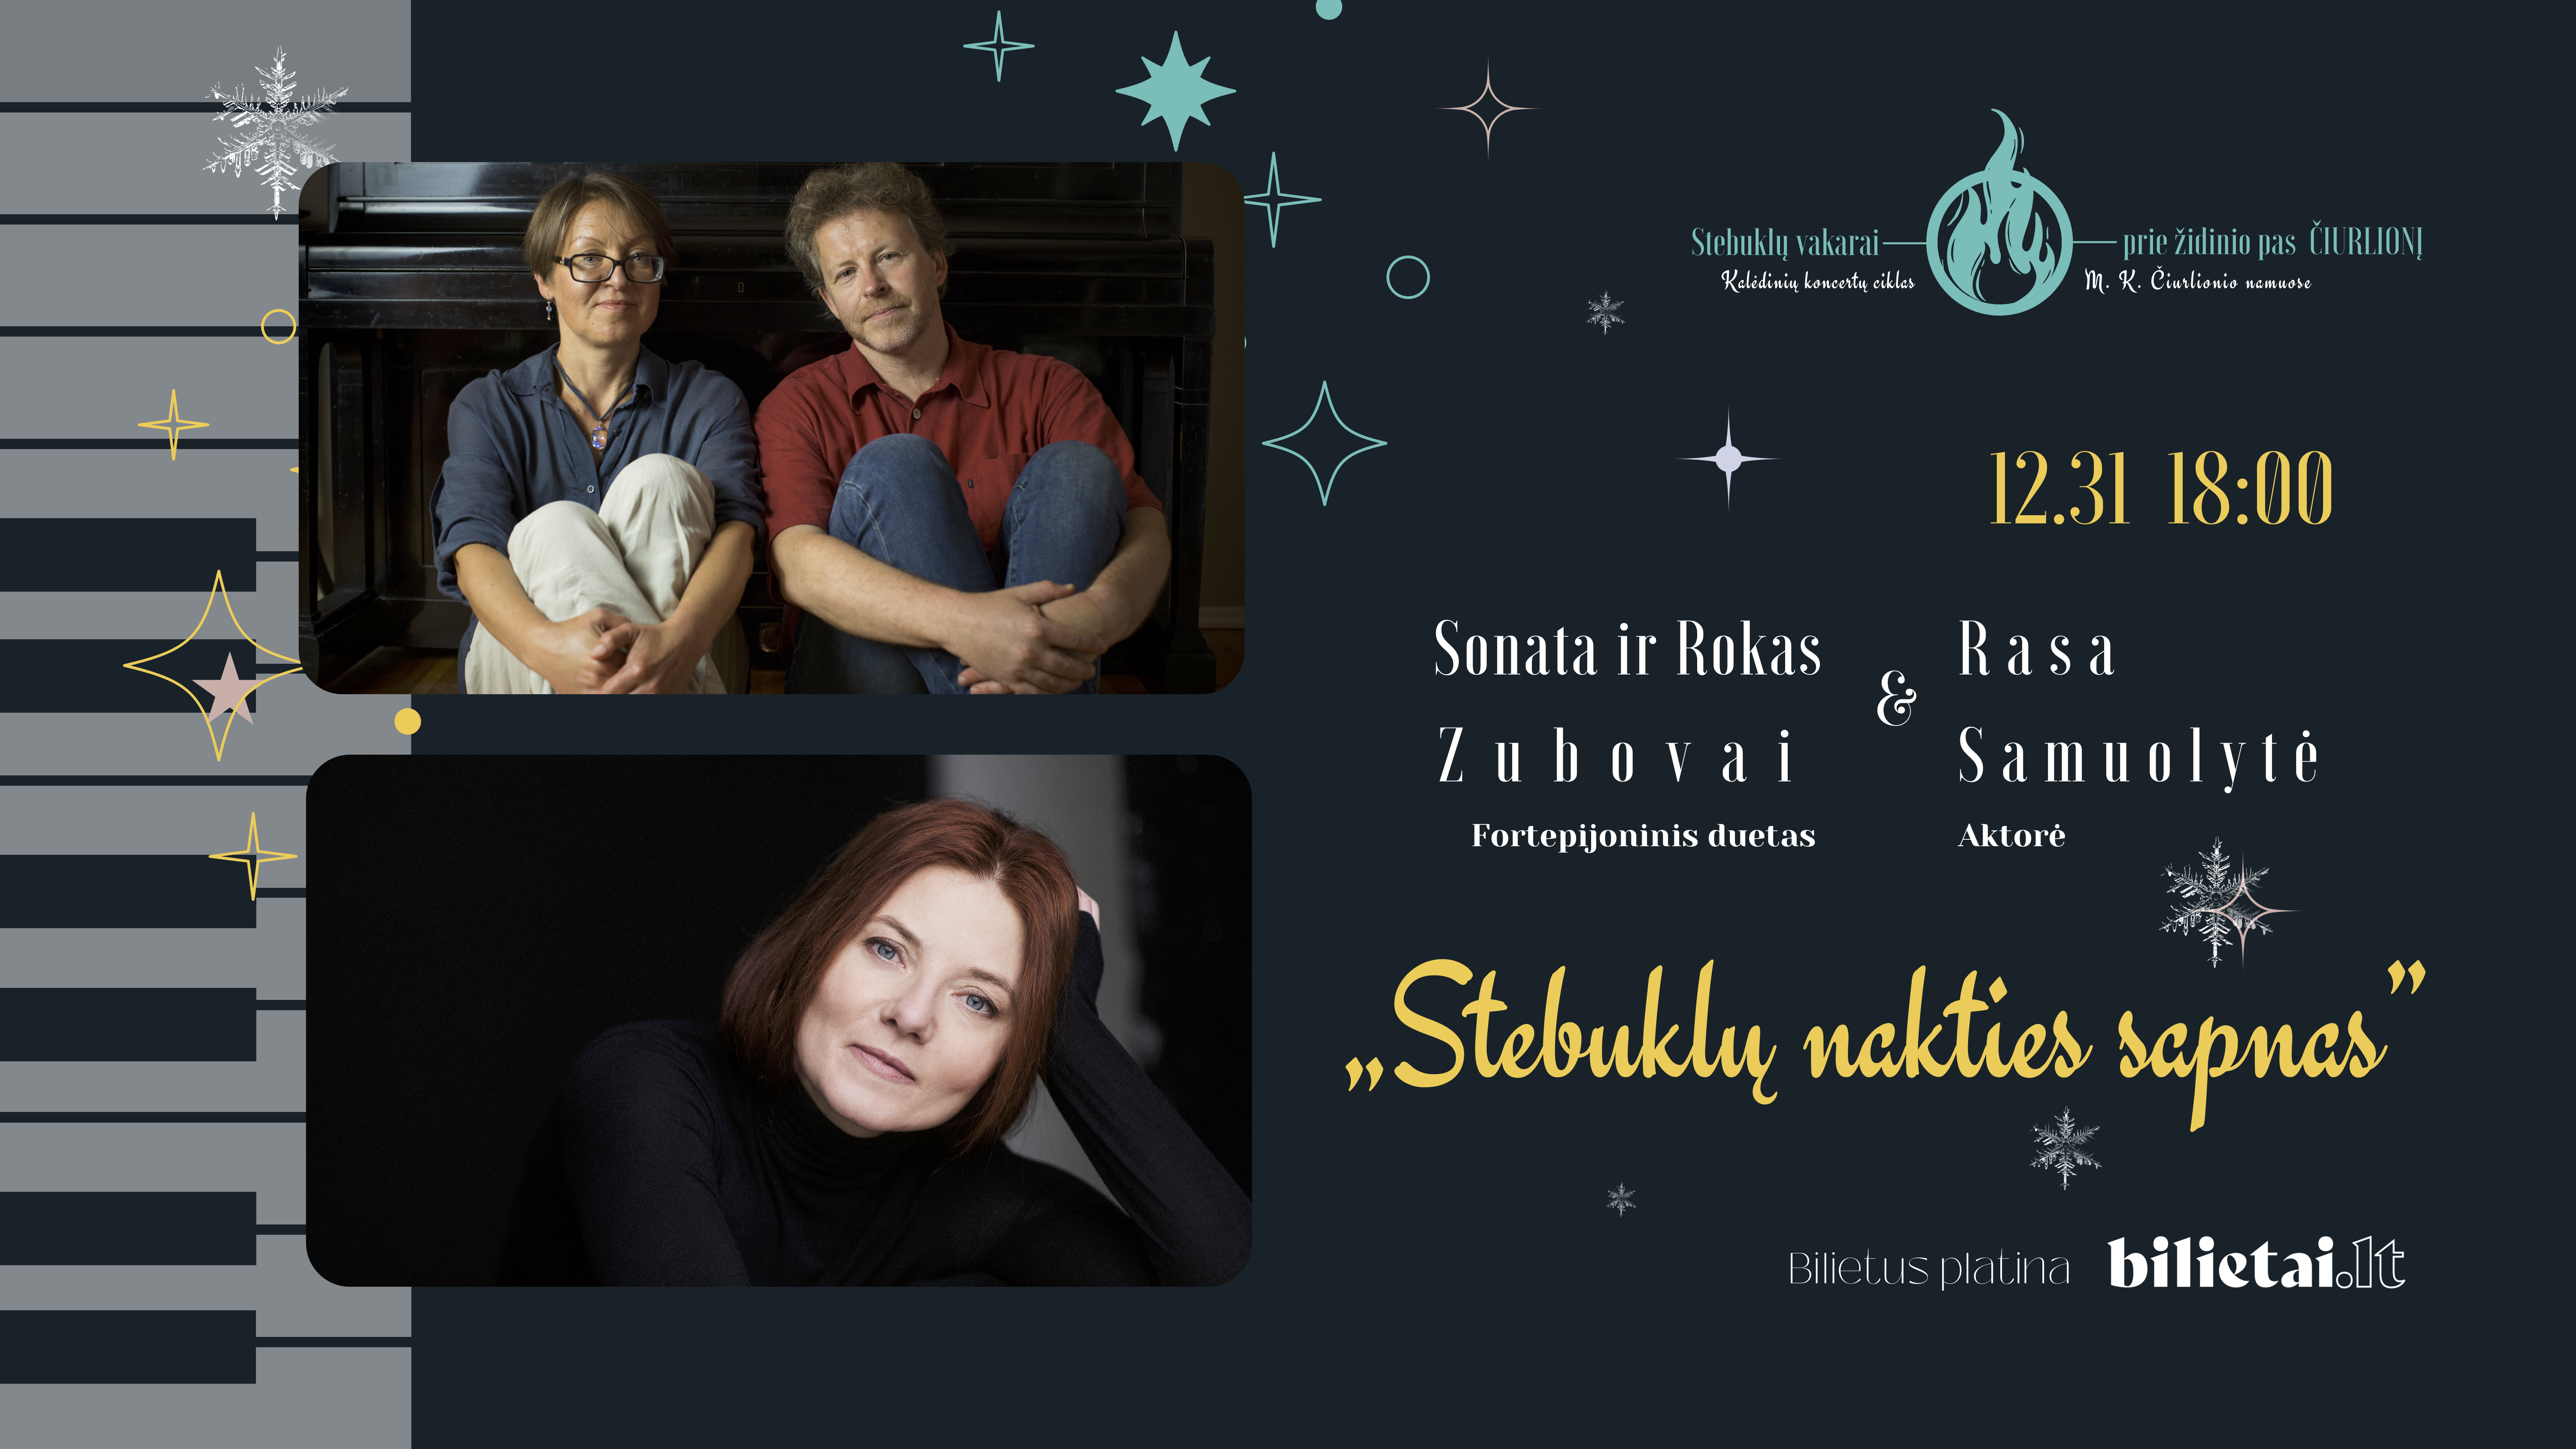 „Stebuklų vakarai prie židinio pas Čiurlionį“ | „Stebuklų nakties sapnas“: Sonata Zubovienė ir Rokas Zubovas (fortepijoninis duetas), Rasa Samuolytė, aktorė